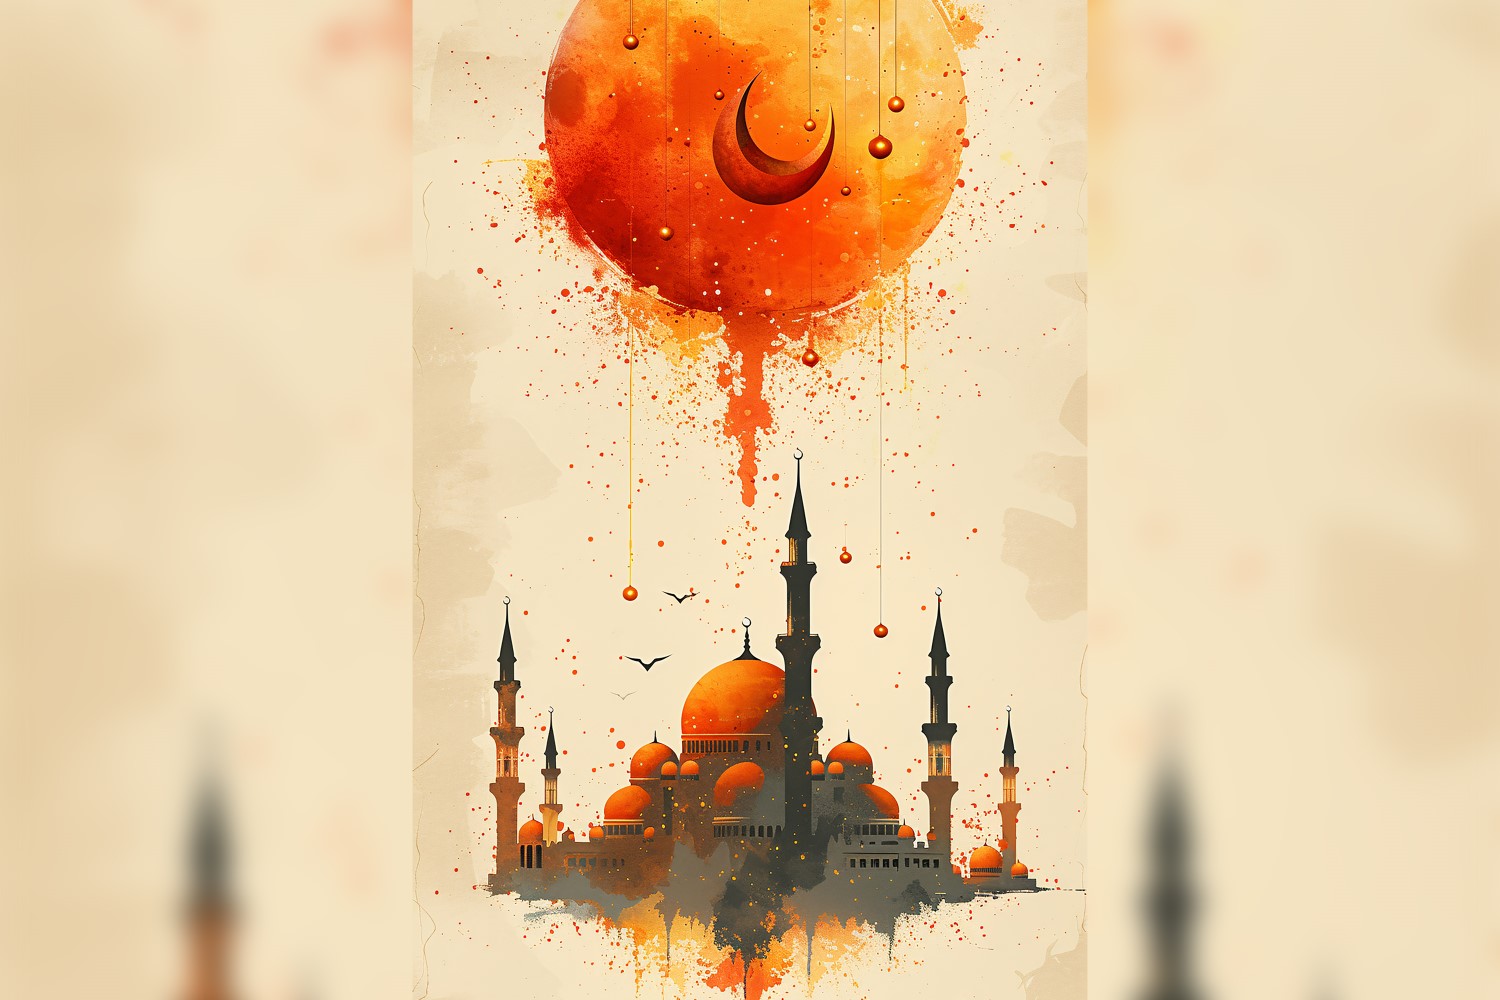 Ramadan Kareem greeting card poster design with moon & mosque 03